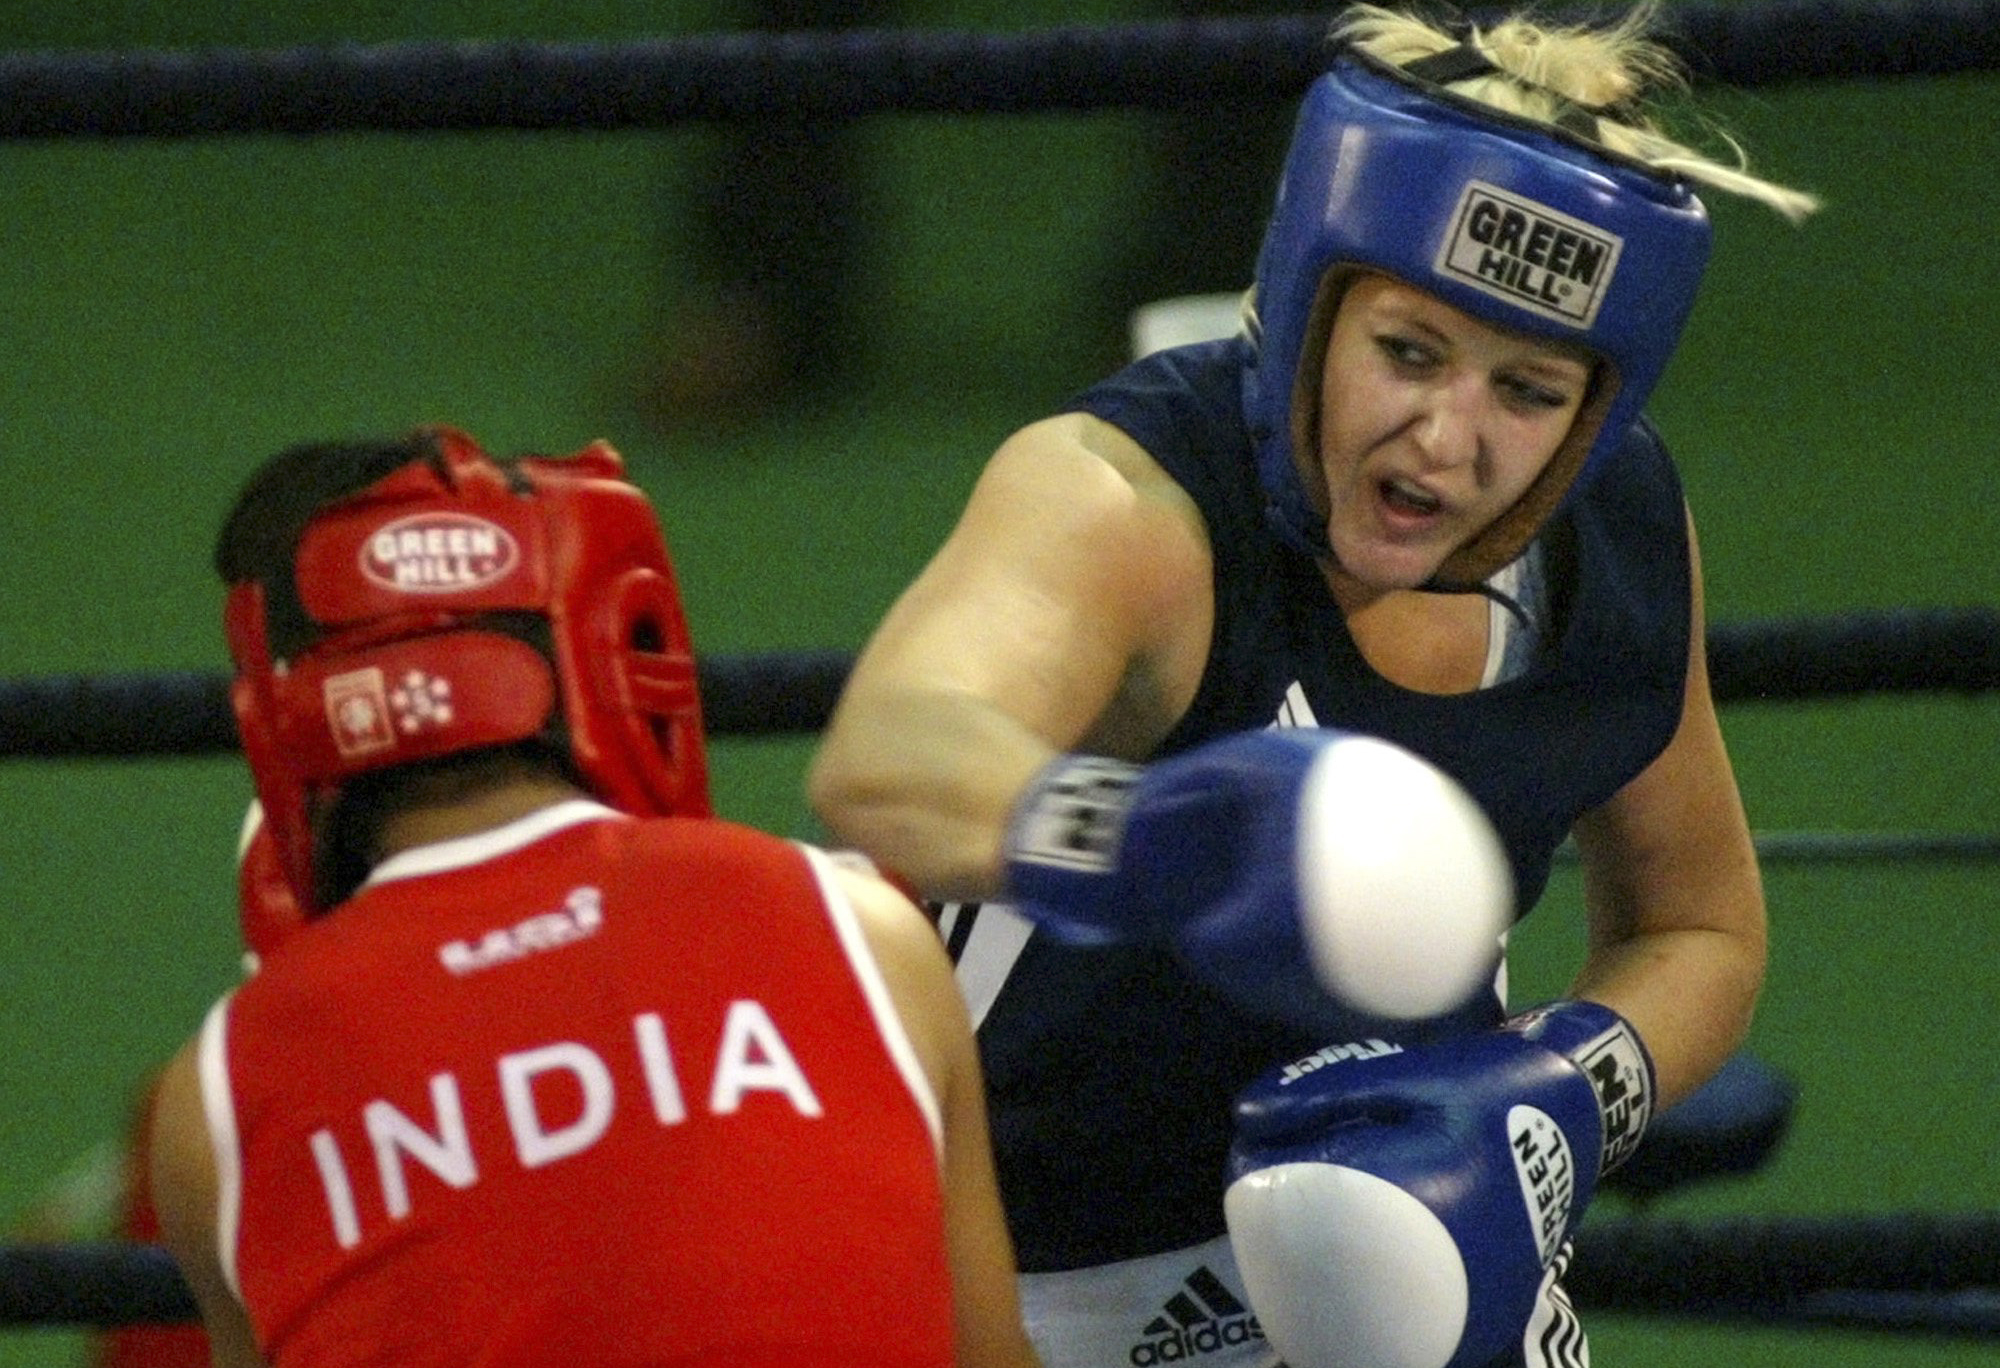 VM, Indien, Klara Svensson, Anna Laurell, boxning